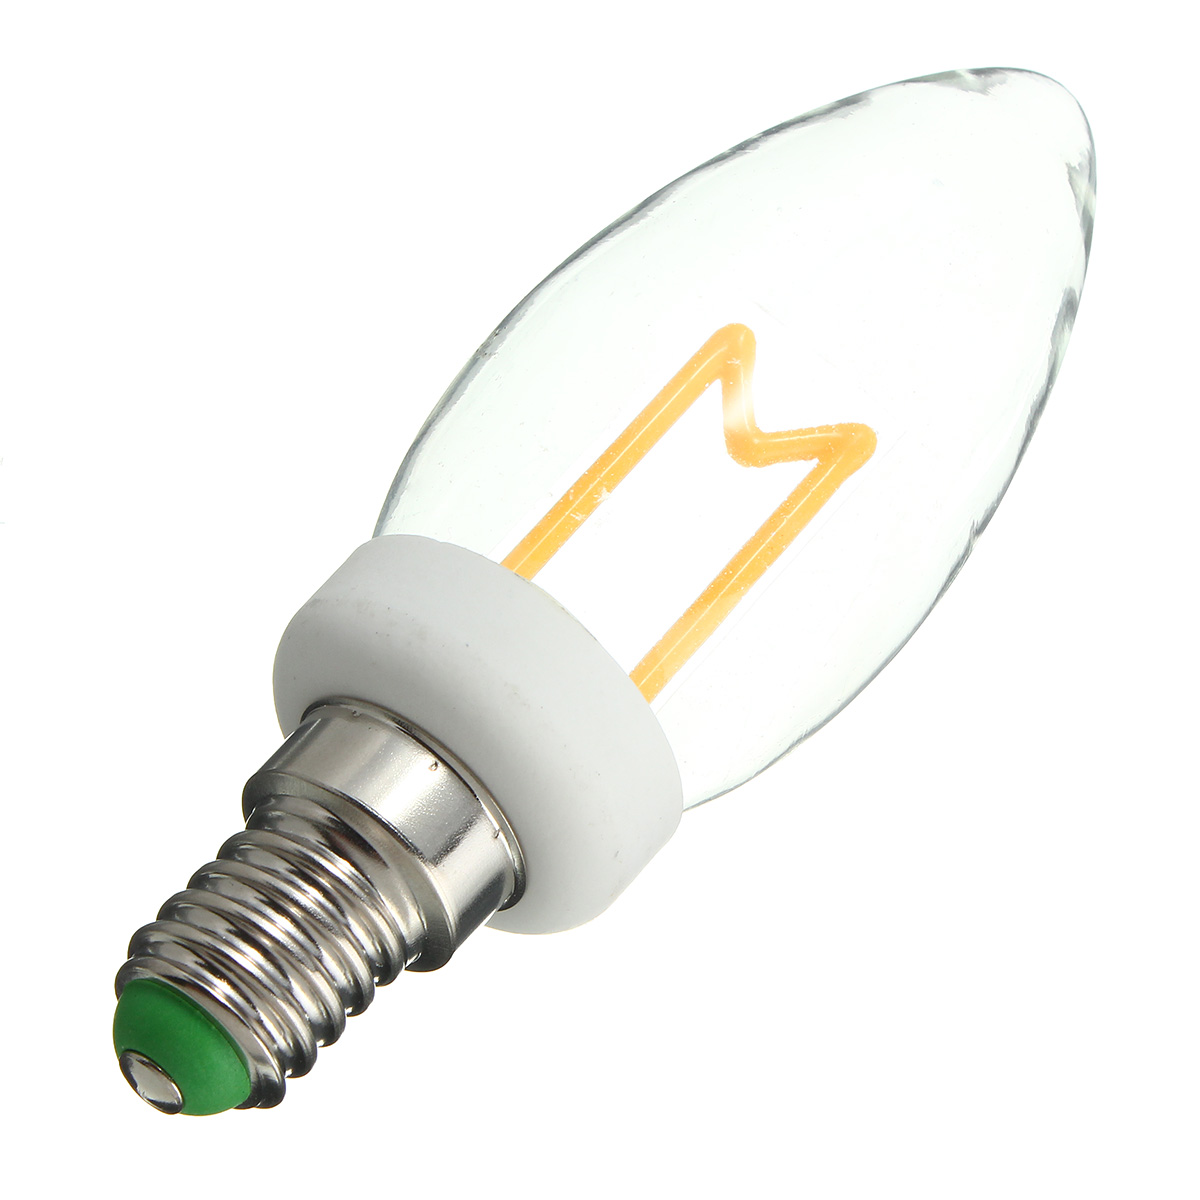 Kingso-220V-4W-4E14E27-Warm-White-LED-Light-Bulb-Edison-M-Shape-Retro-Light-1894183-6